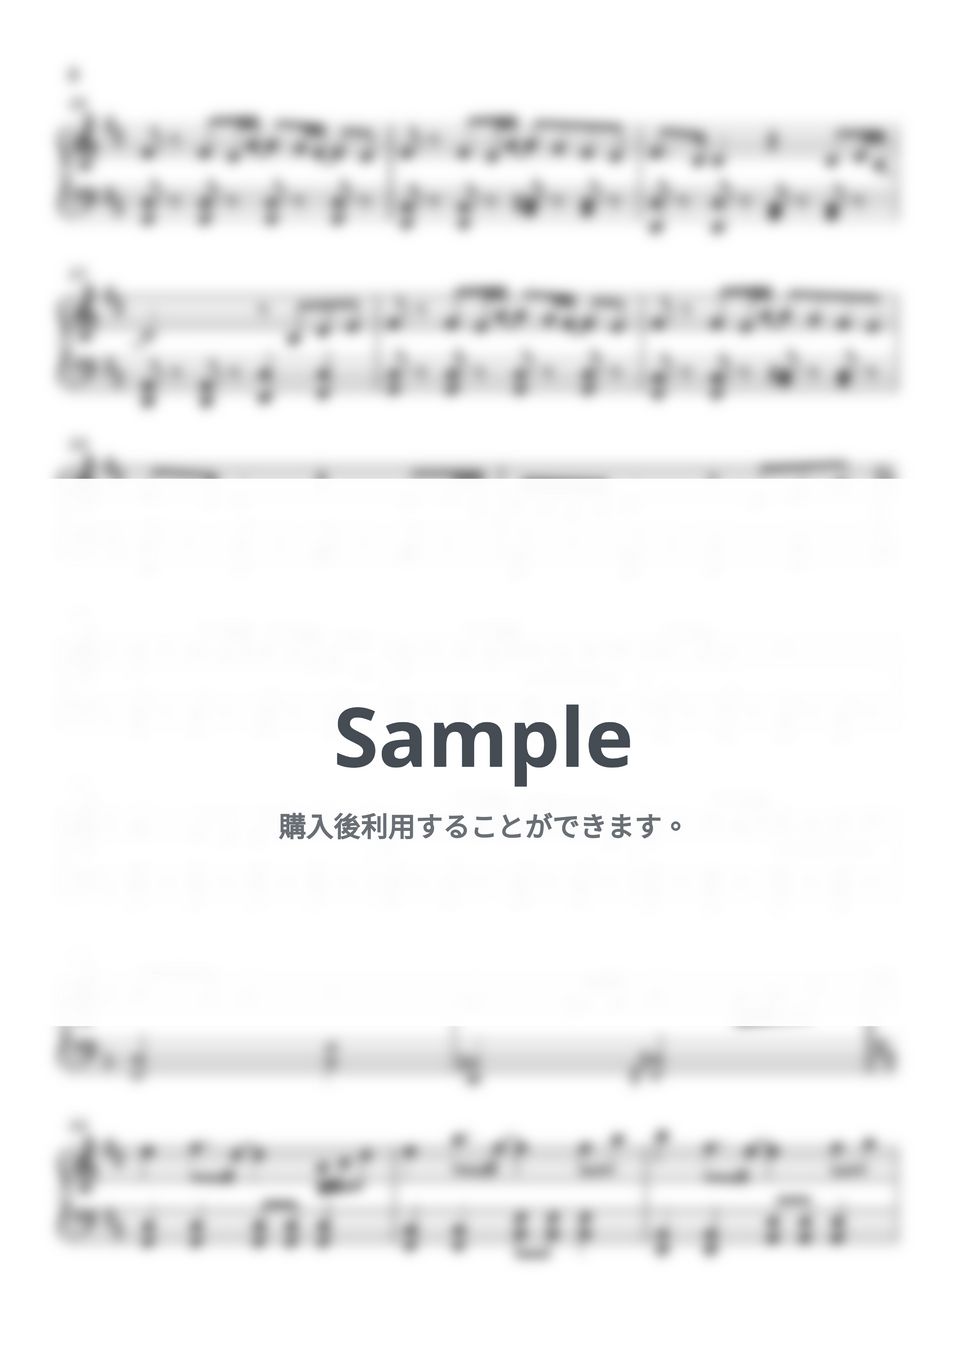 藤井風 - きらり (ピアノ初心者向け) by Piano Lovers. jp